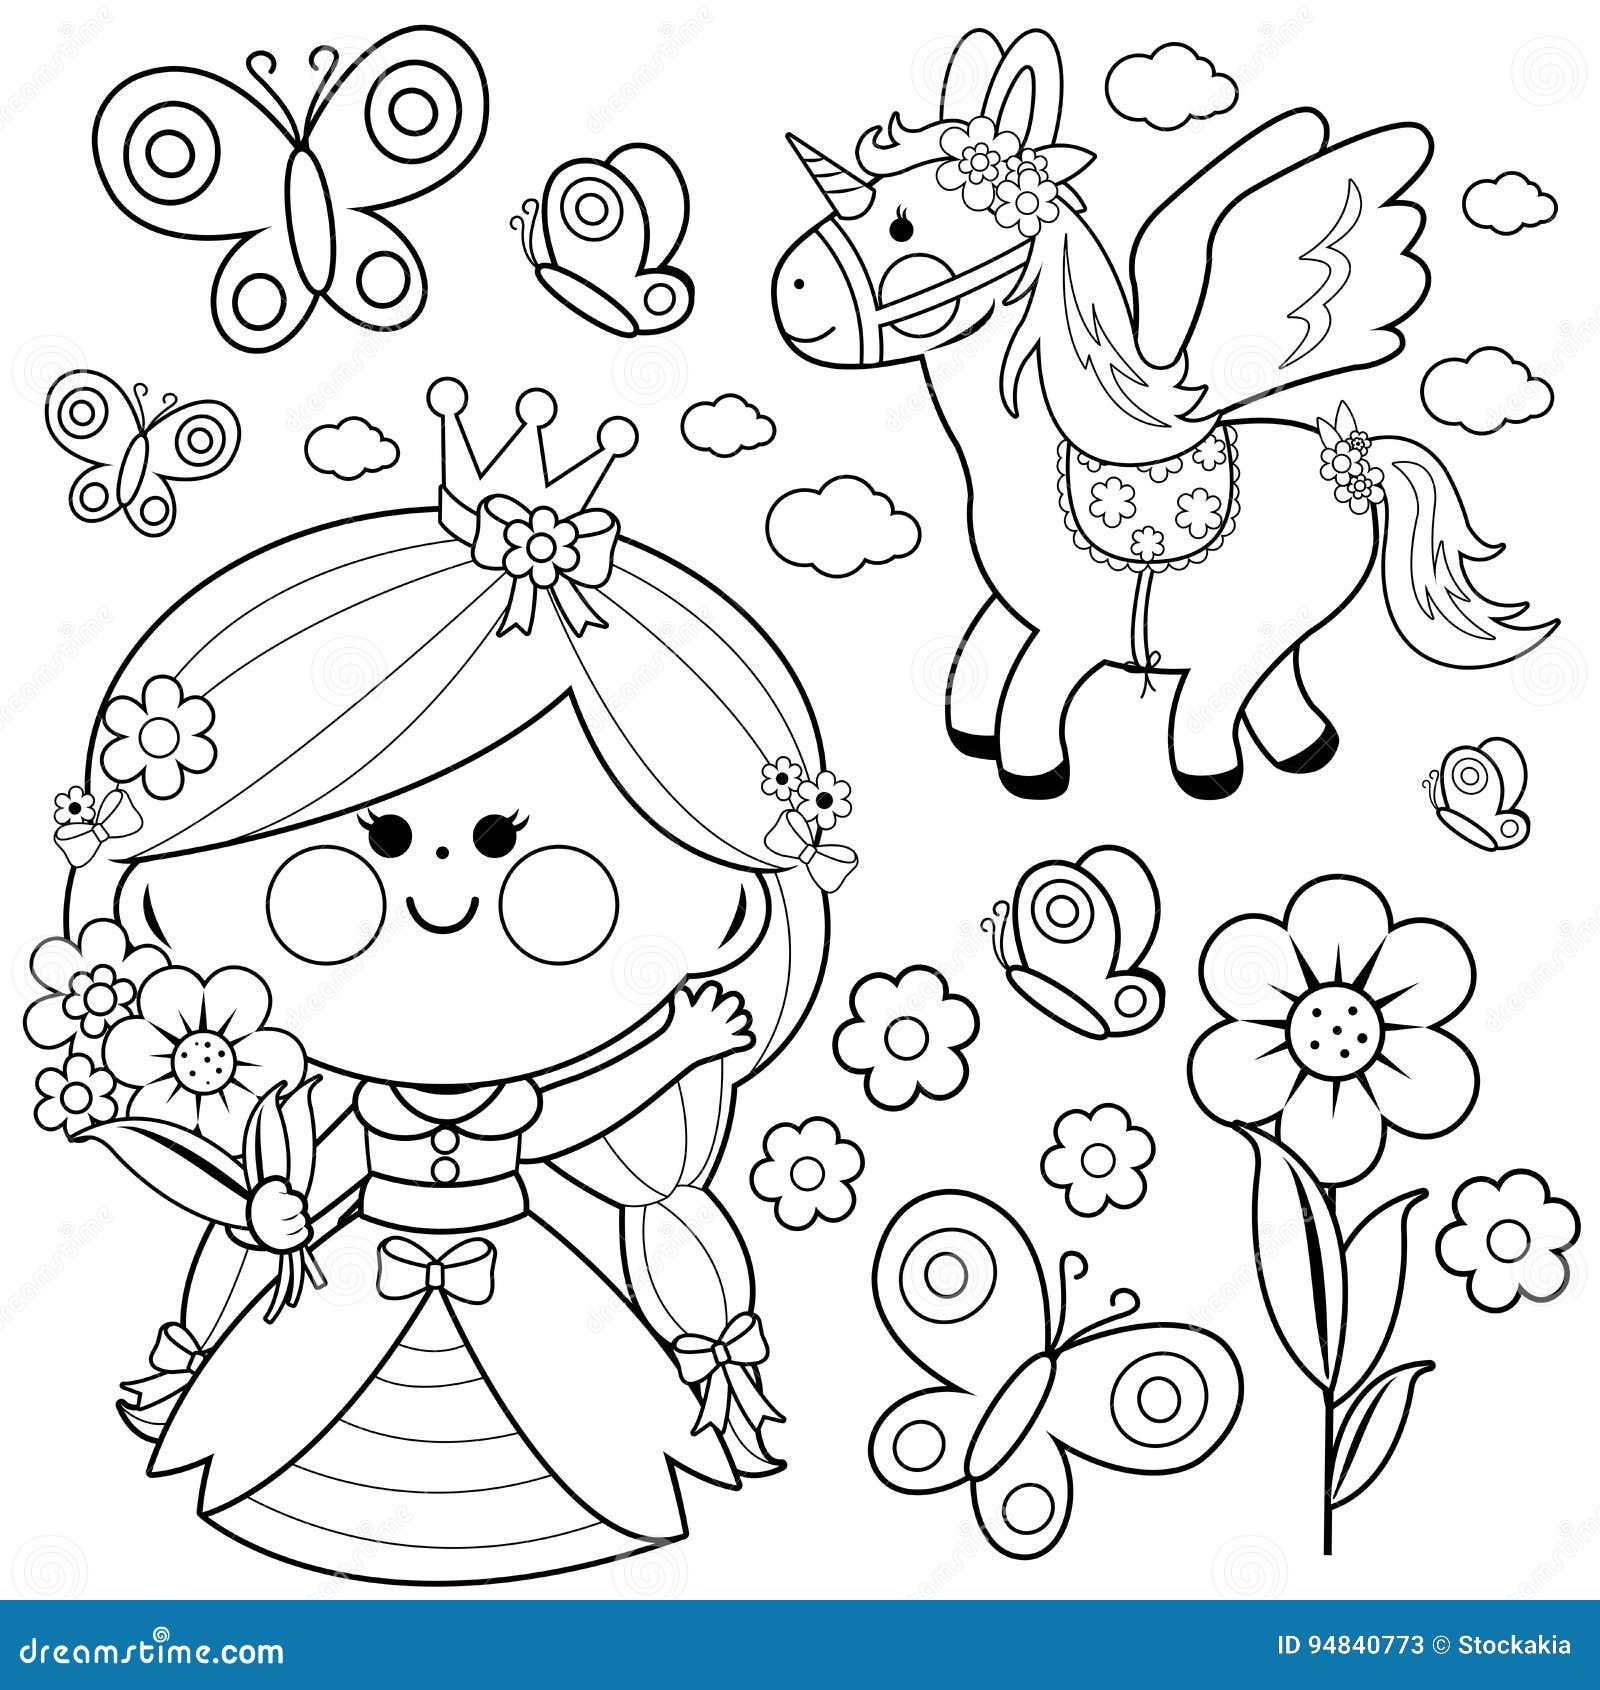 Beautiful Princess And Unicorn Coloring Page Cartoon Vector | CartoonDealer.com #18765175